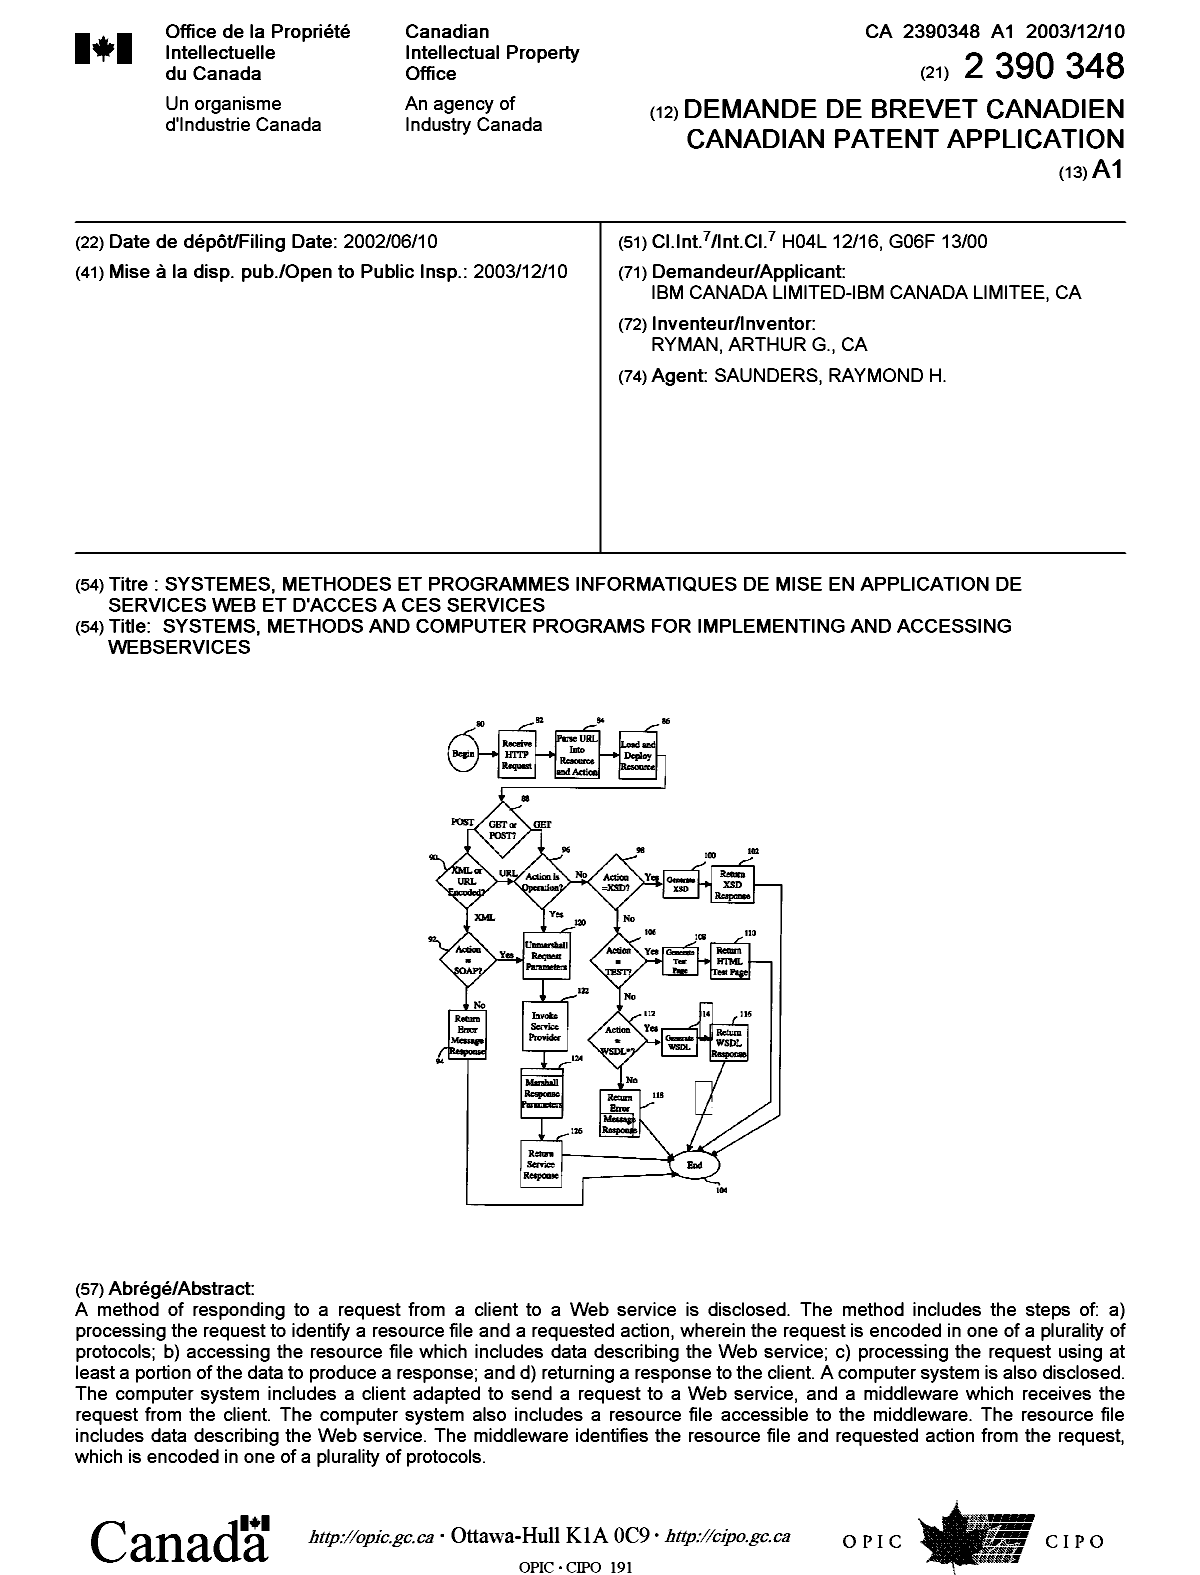 Document de brevet canadien 2390348. Page couverture 20031114. Image 1 de 1